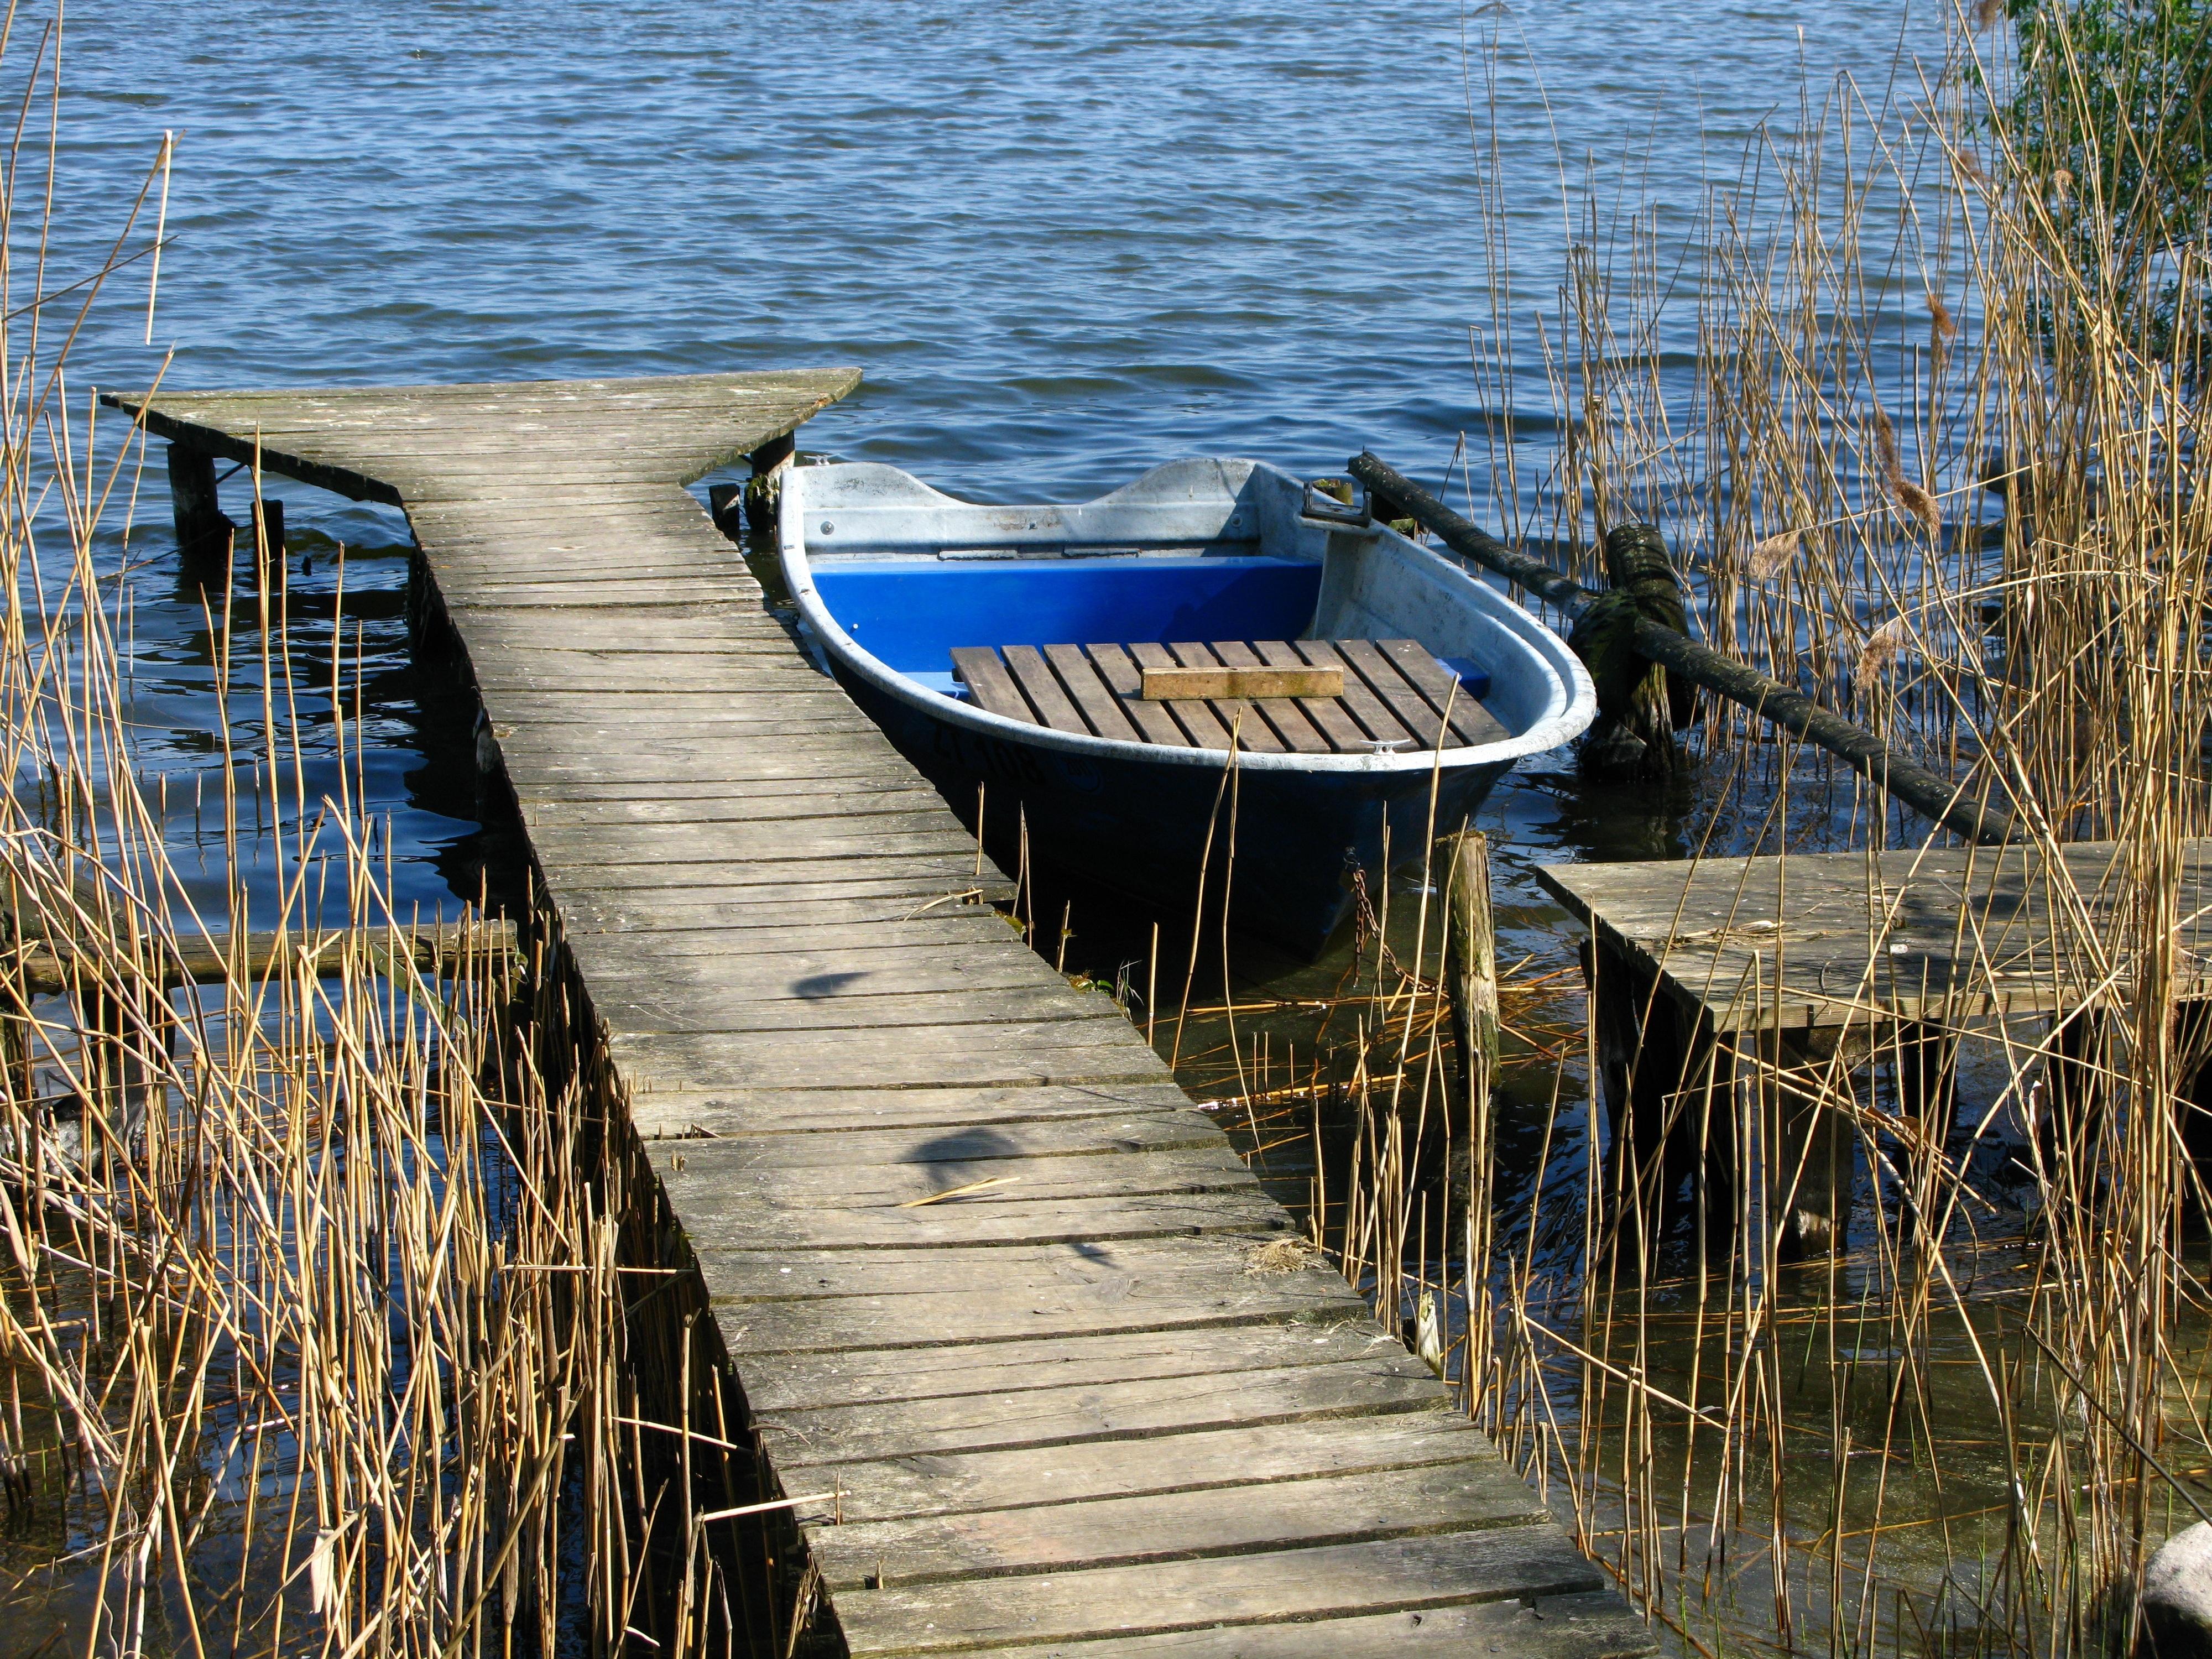 От двух причалов на реке. Причал для лодок. Деревянные мостки на реке. Причал на озере. Пристань для лодок.